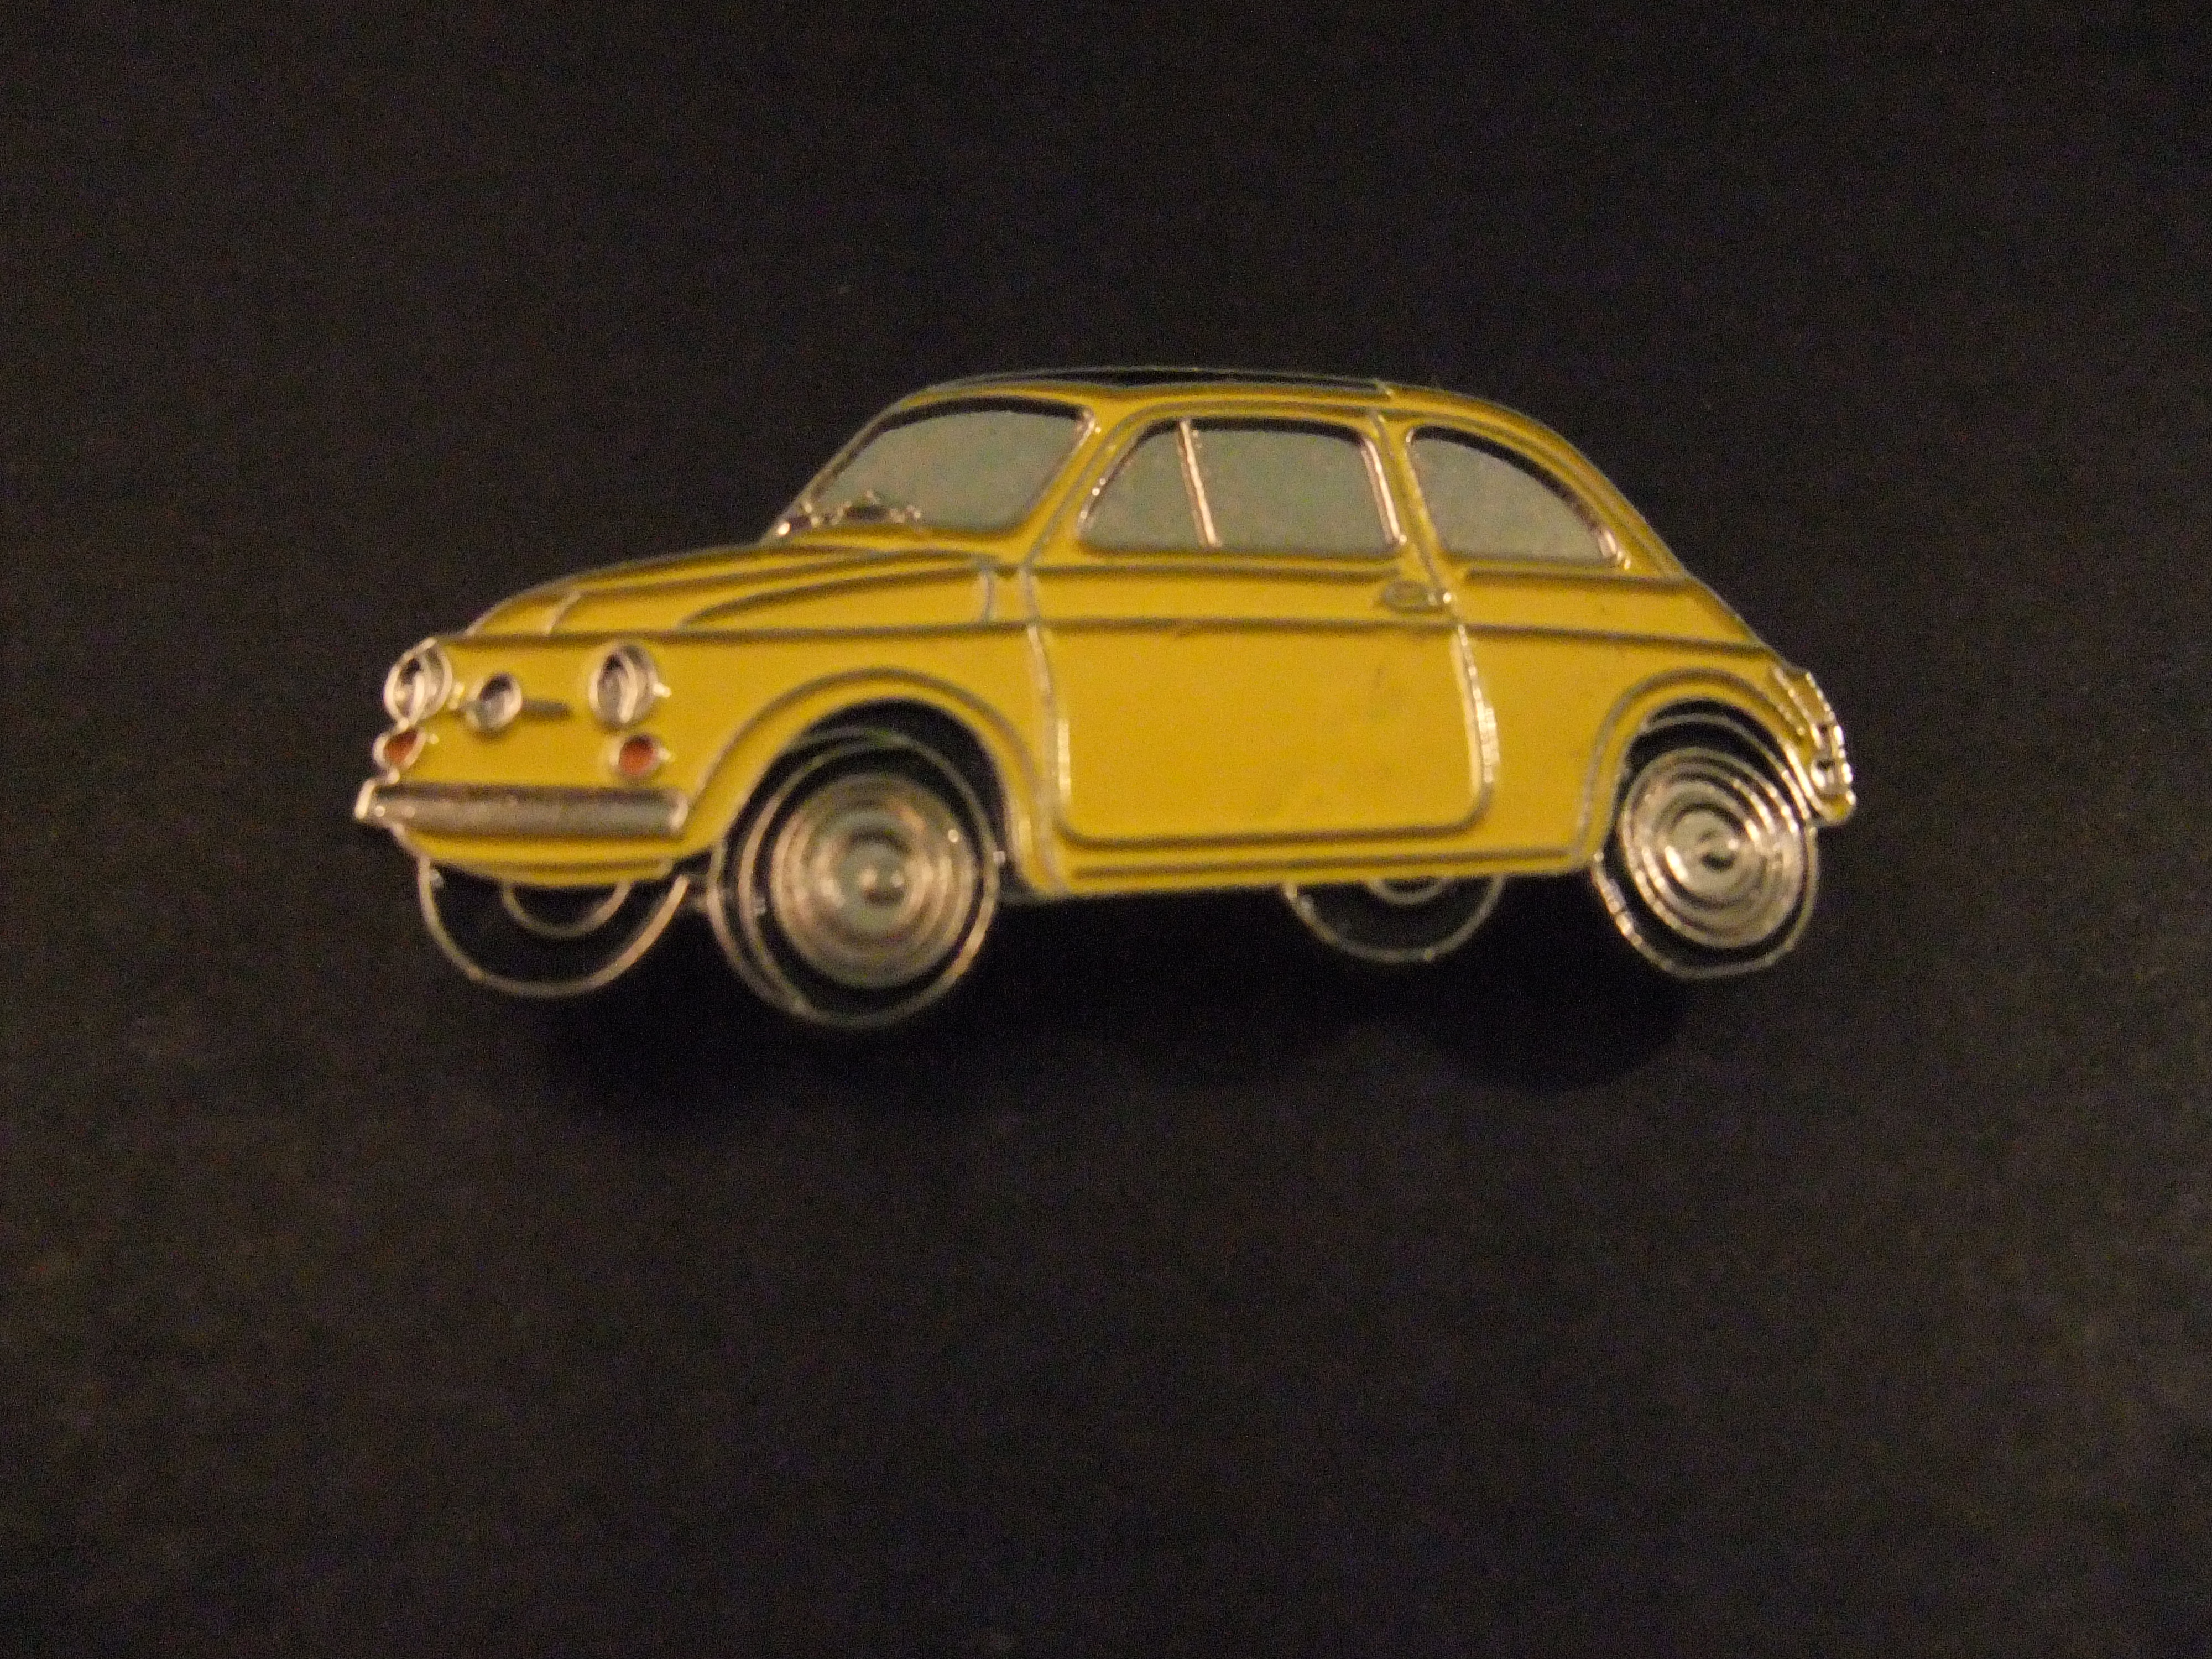 Fiat 500 kleine stadsauto , geel